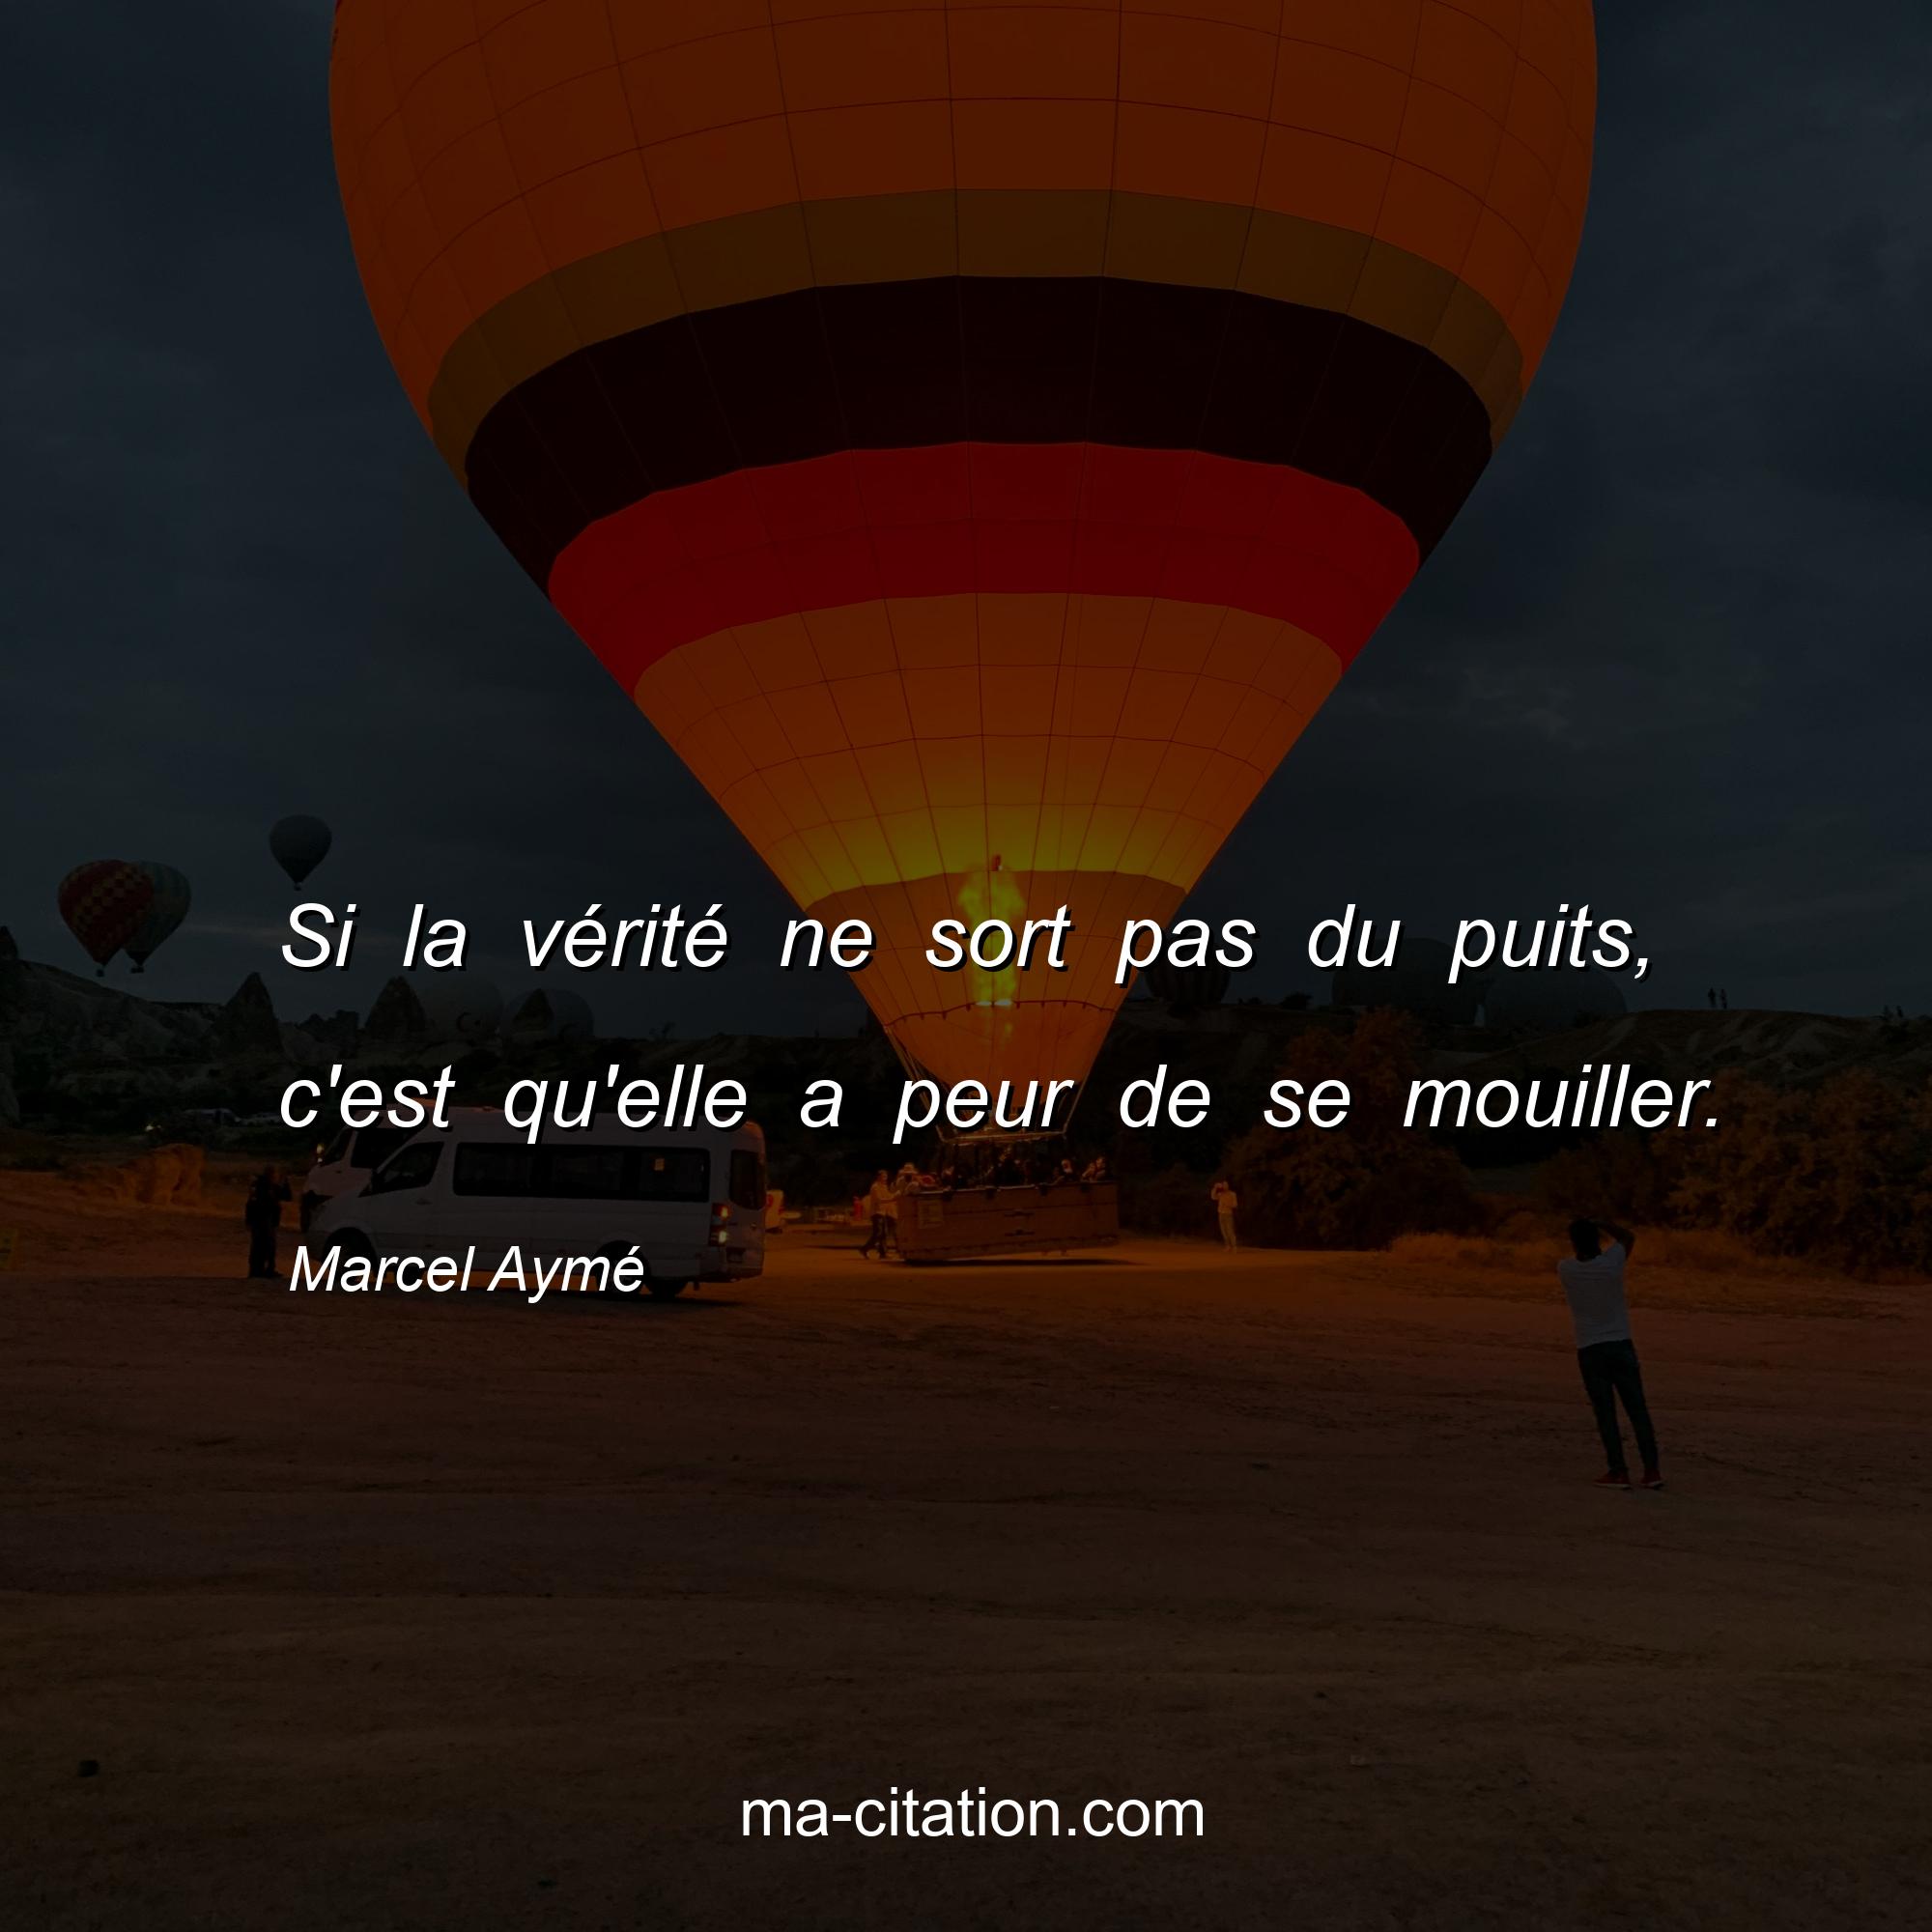 Marcel Aymé : Si la vérité ne sort pas du puits, c'est qu'elle a peur de se mouiller.